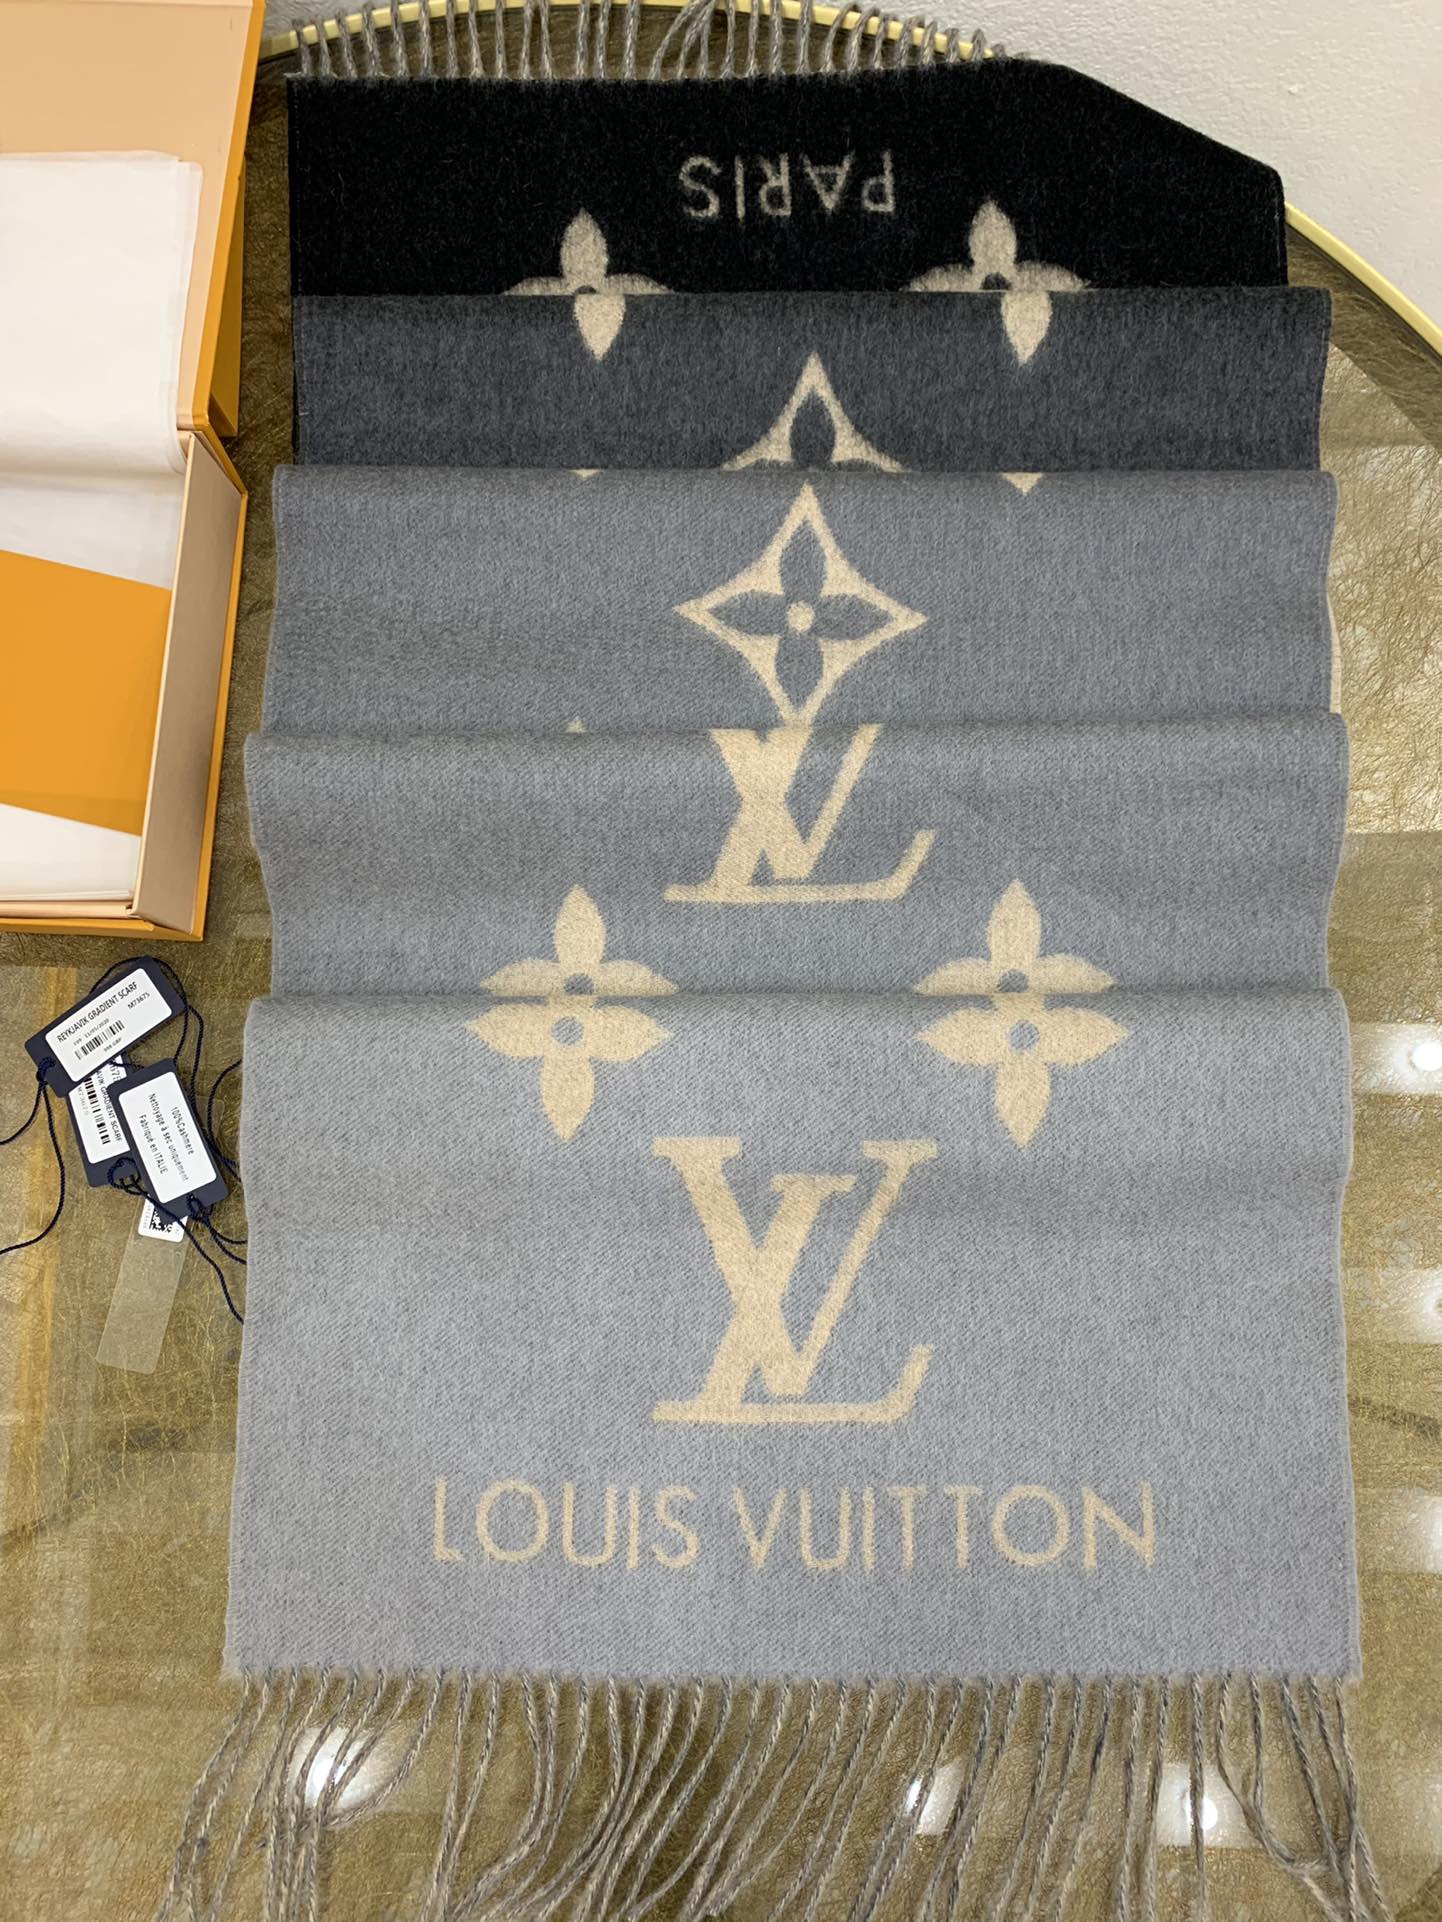 Louis Vuitton M73675 REYKJAVIK GRADIENT SCARF